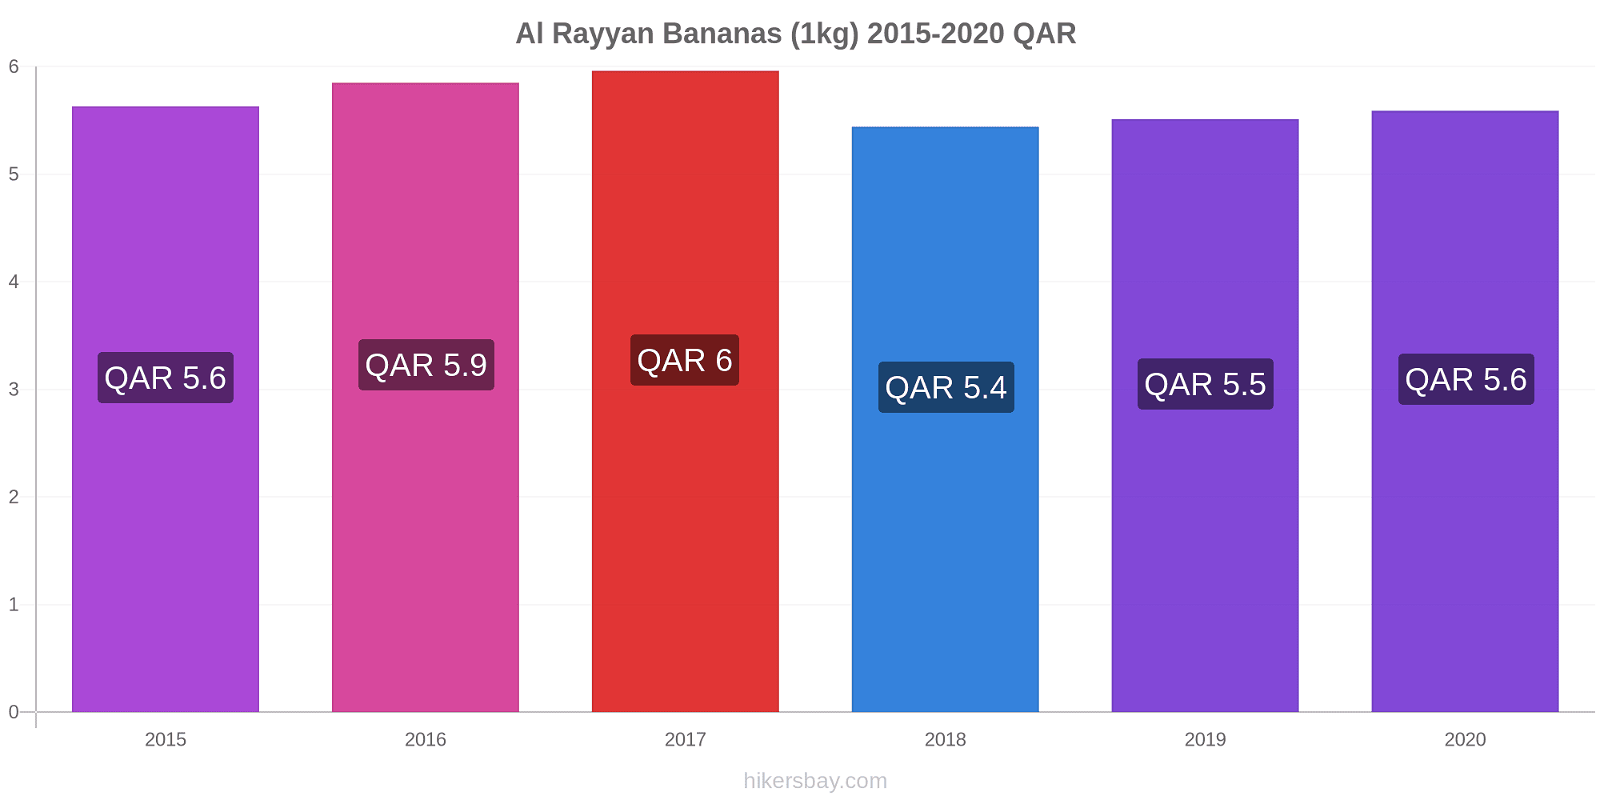 Al Rayyan variação de preço Banana (1kg) hikersbay.com